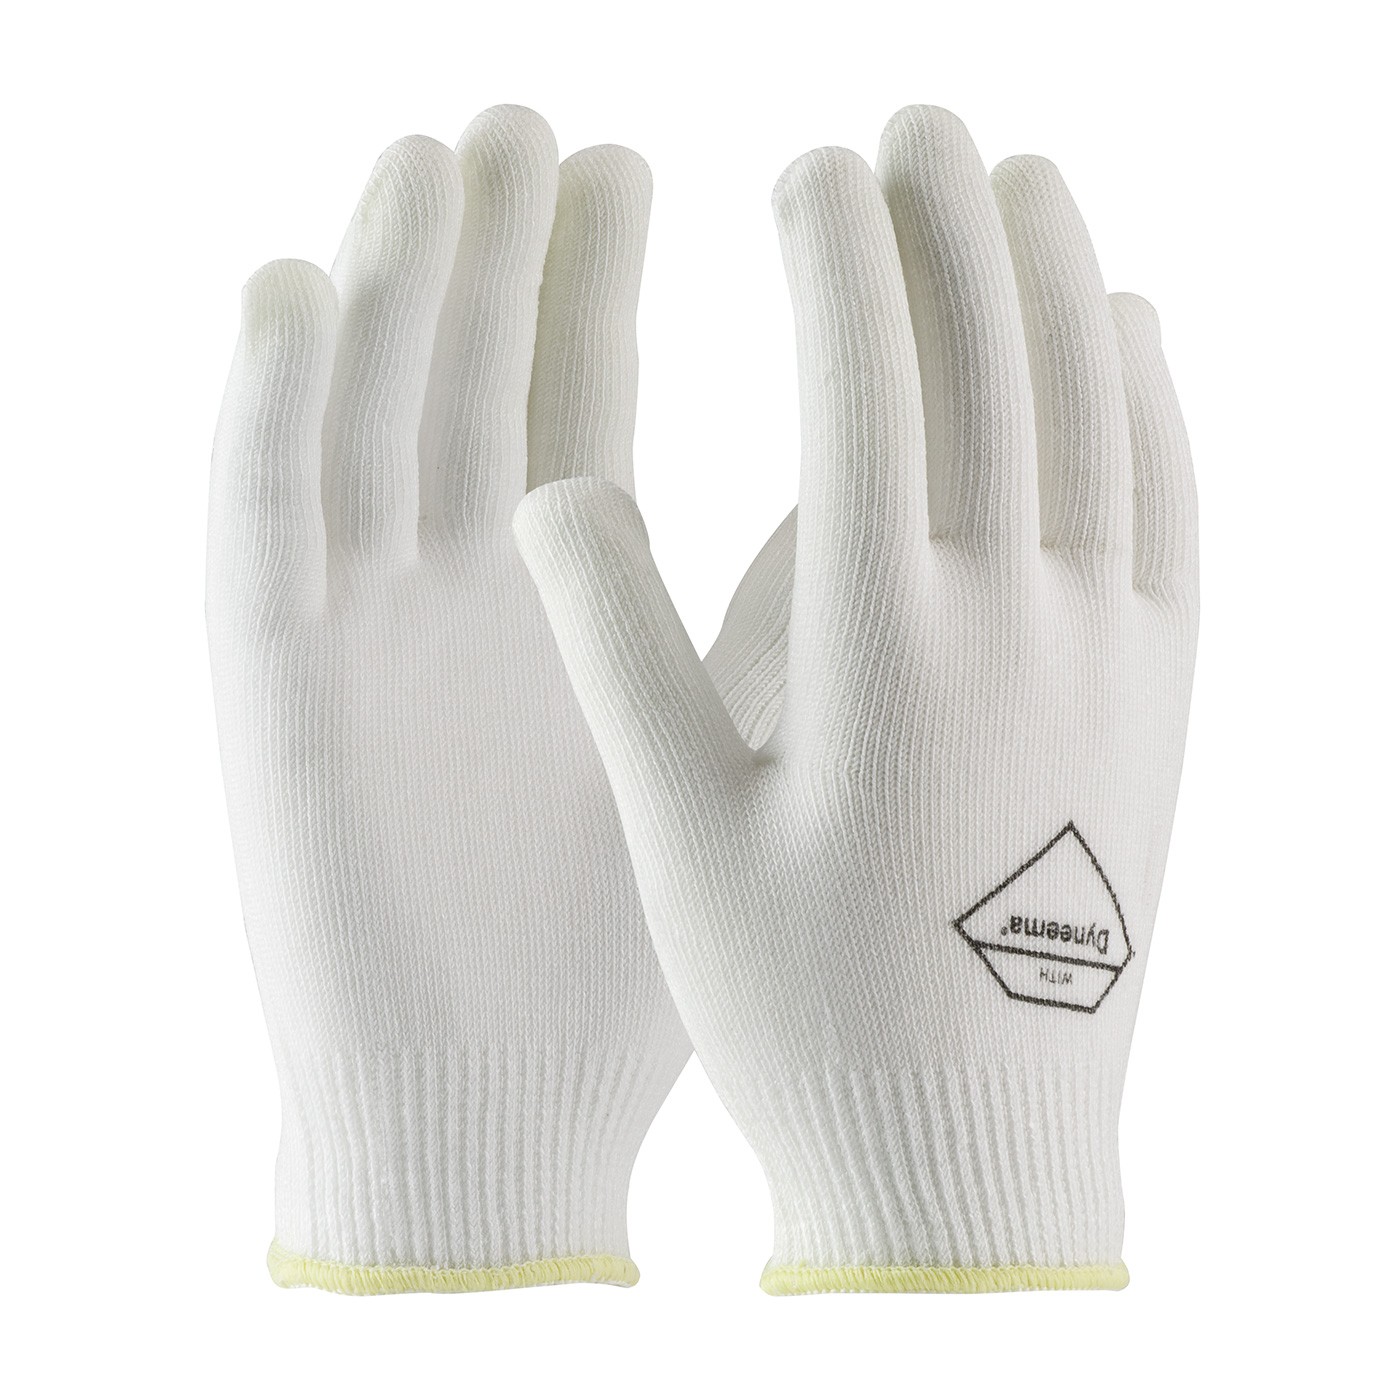 Kut Gard® Seamless Knit Dyneema® / Lycra Glove - Light Weight  (#17-DL200)